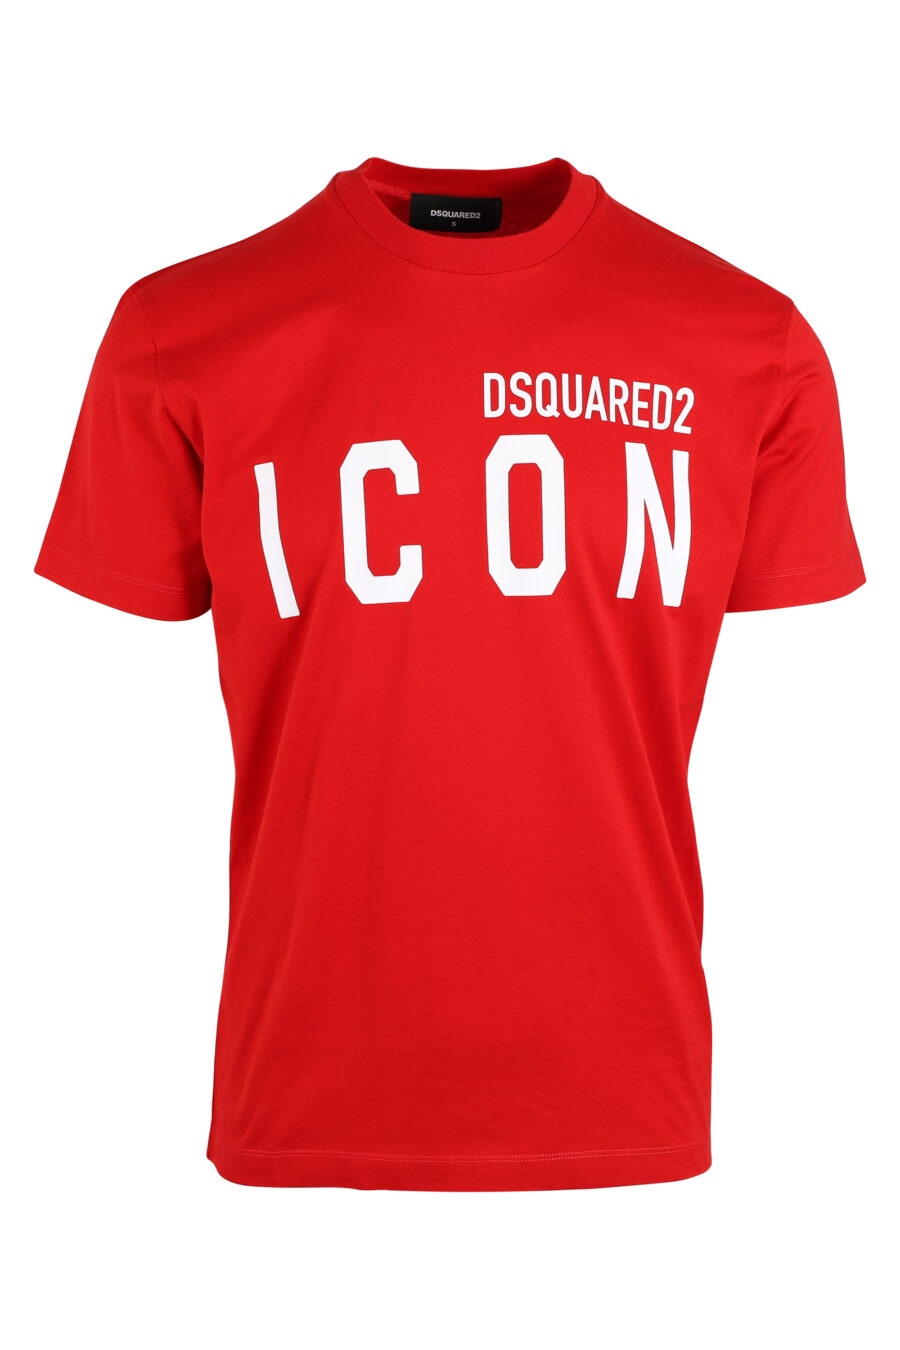 Camiseta roja con doble logo "icon" - IMG 0642